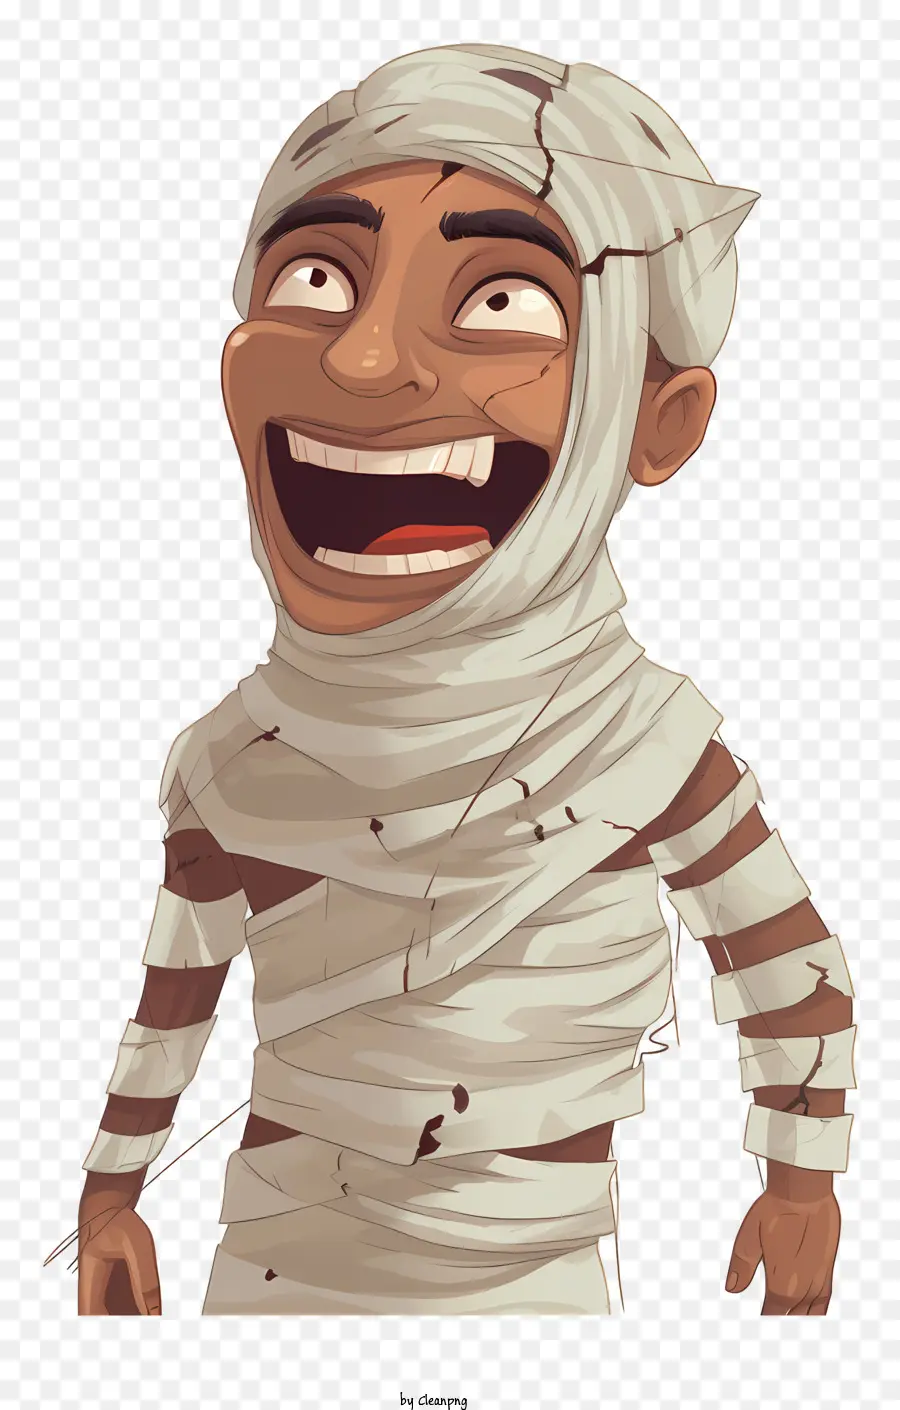 Cartoon Man Verband auf Gesicht schelmisches Lächeln älterer Mann spielerischer Ausdruck - Cartoon -Mann mit Verband und schelmischem Lächeln